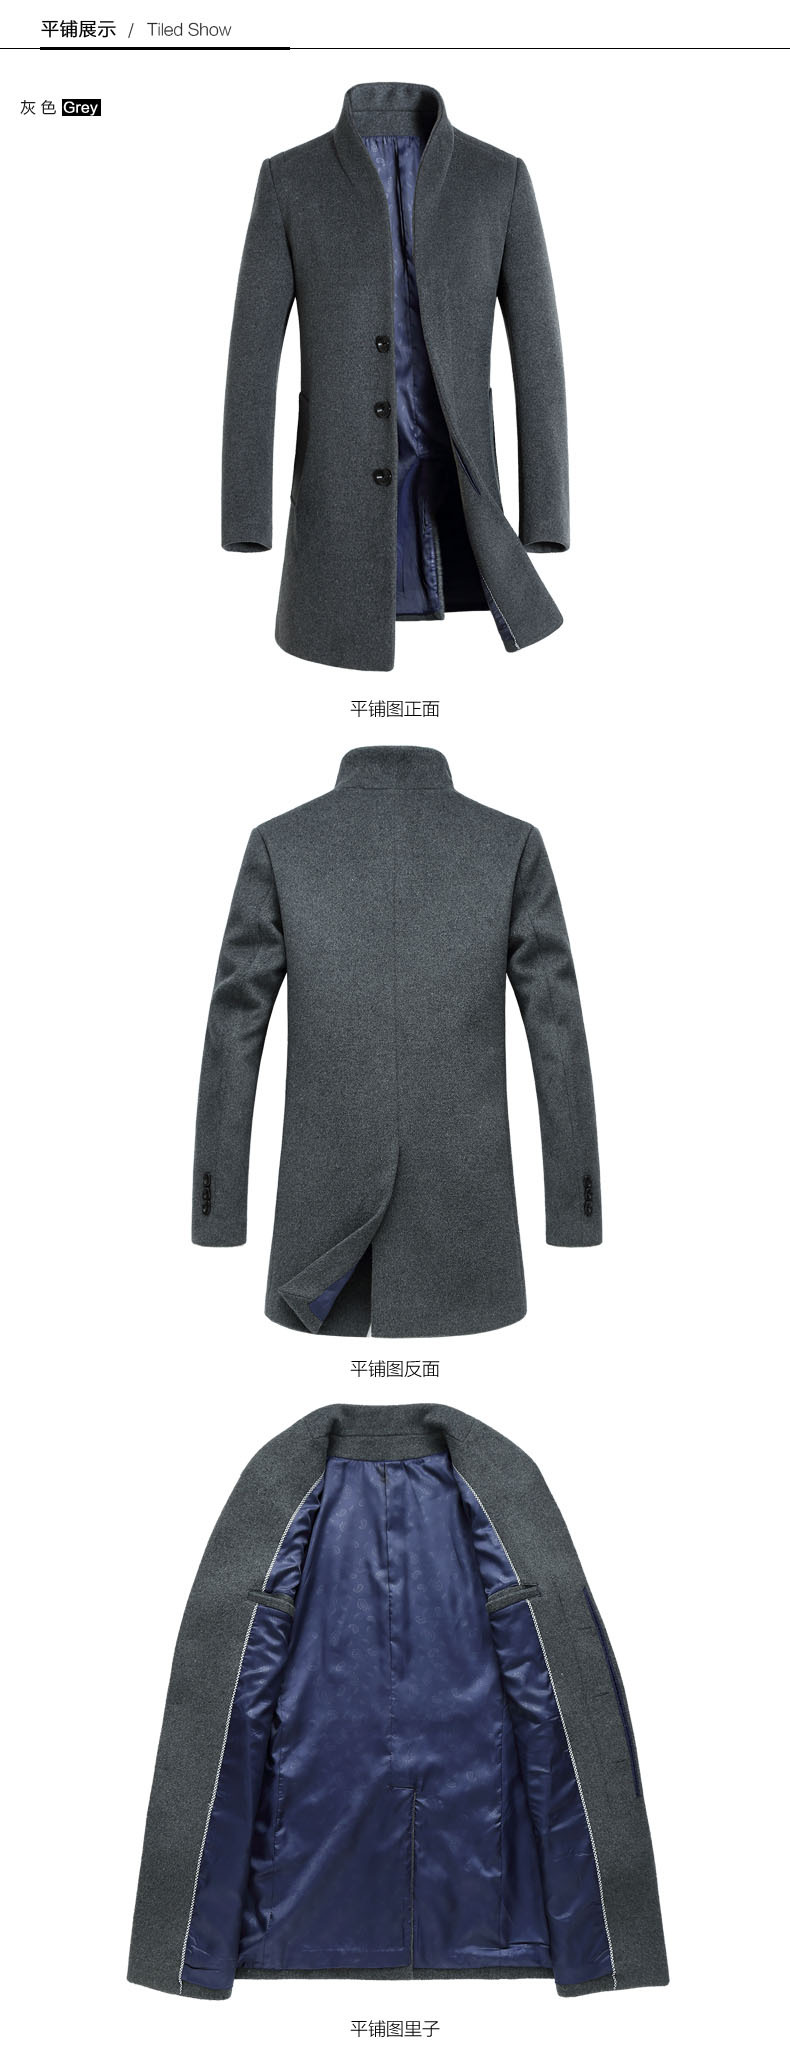 汤河之家 2018秋冬新款男式羊毛呢大衣 中长款青年韩版修身男装风衣外套